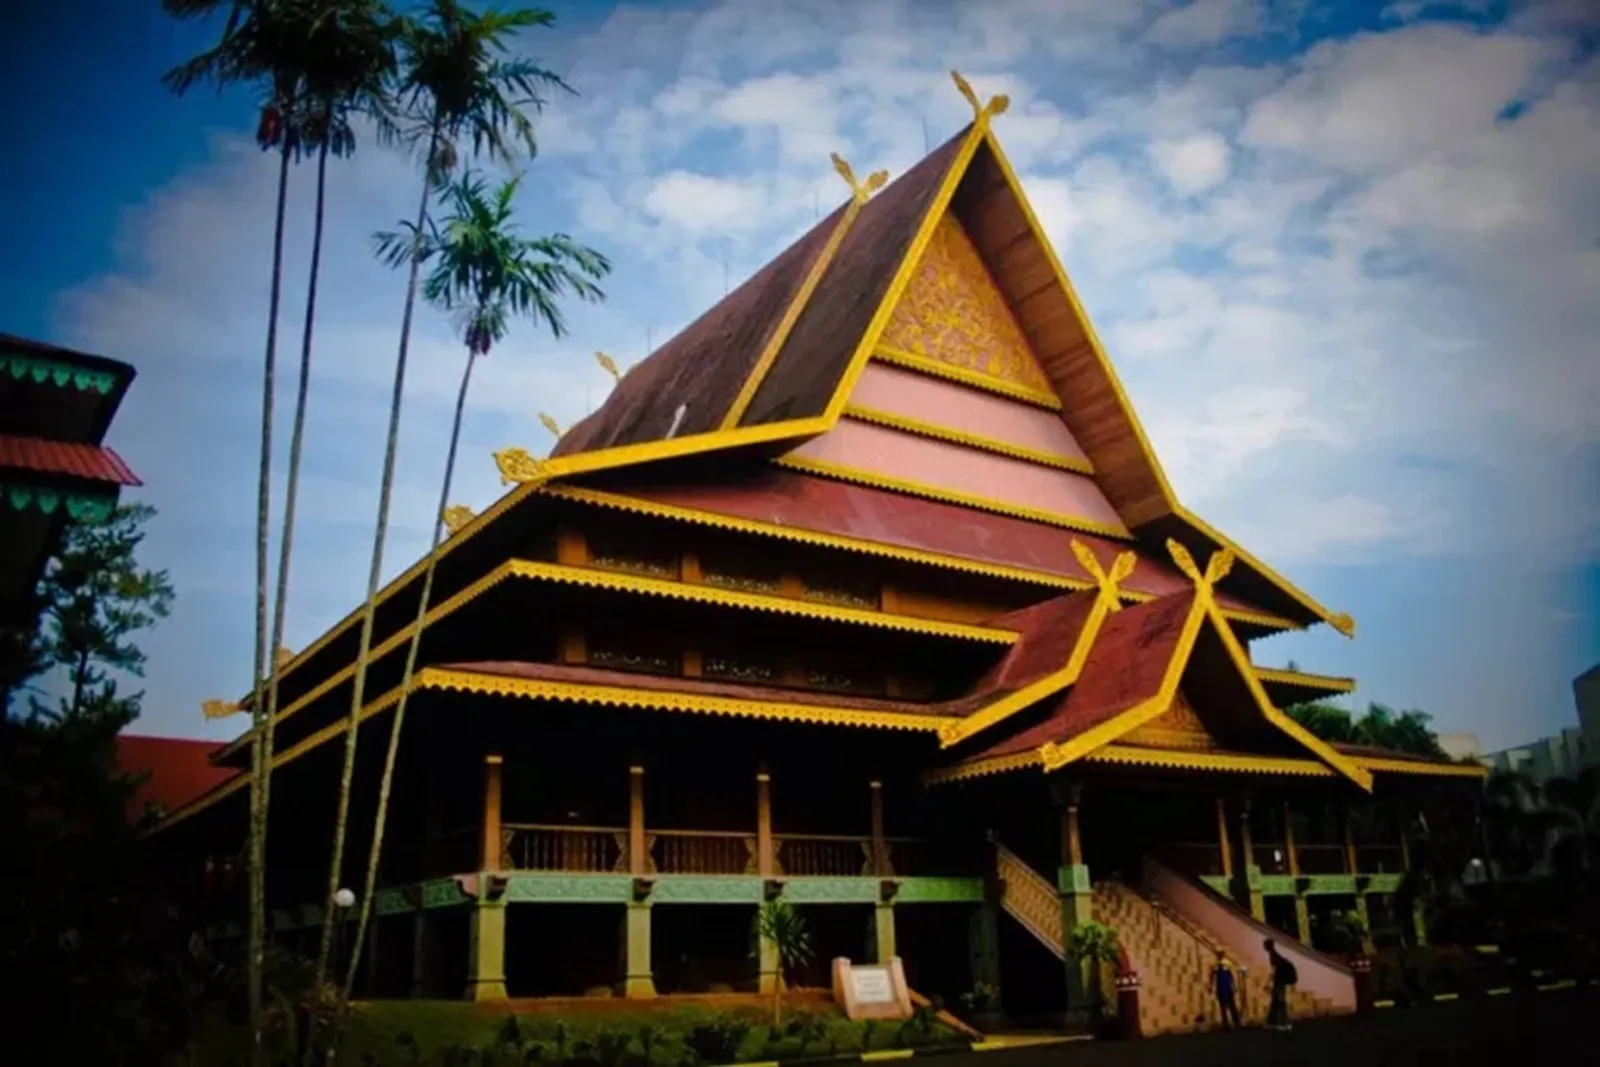 6 Rumah Adat Riau, Arsitektur Nusantara yang Unik dan Indah